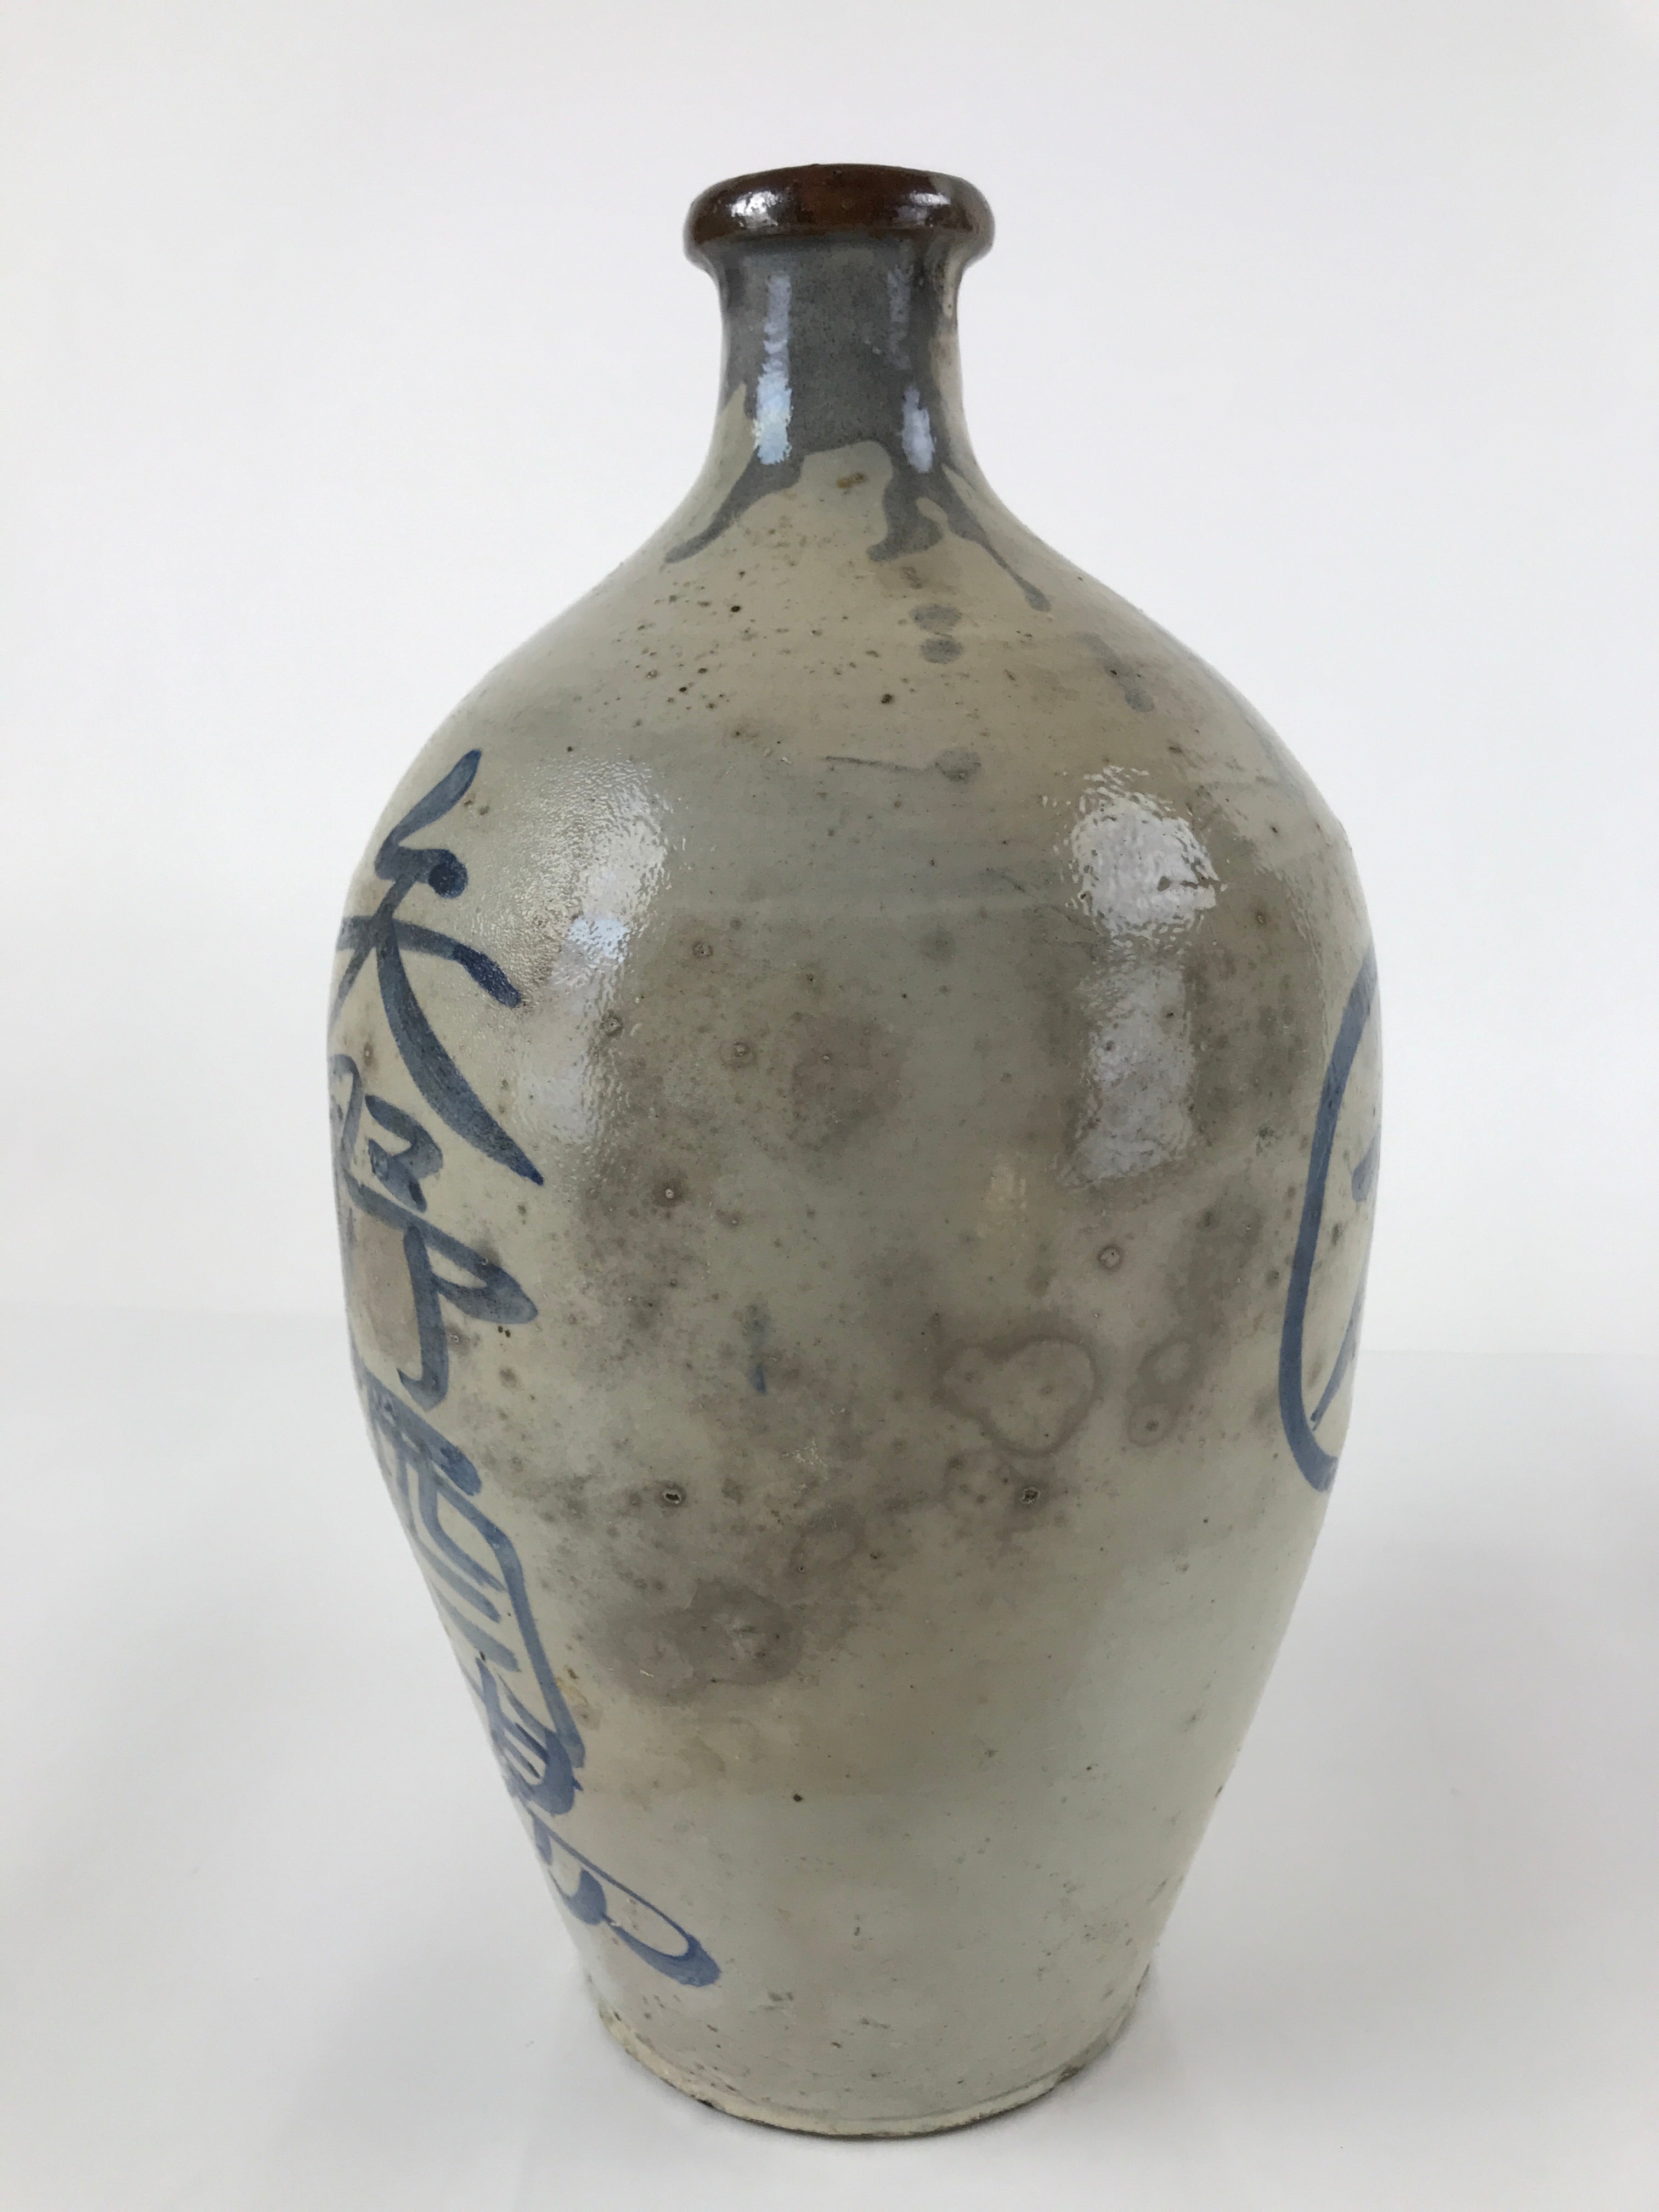 Antique C1880 Japanese Ceramic Sake Bottle Kayoi-Tokkuri Gray Blue Kanji TS632